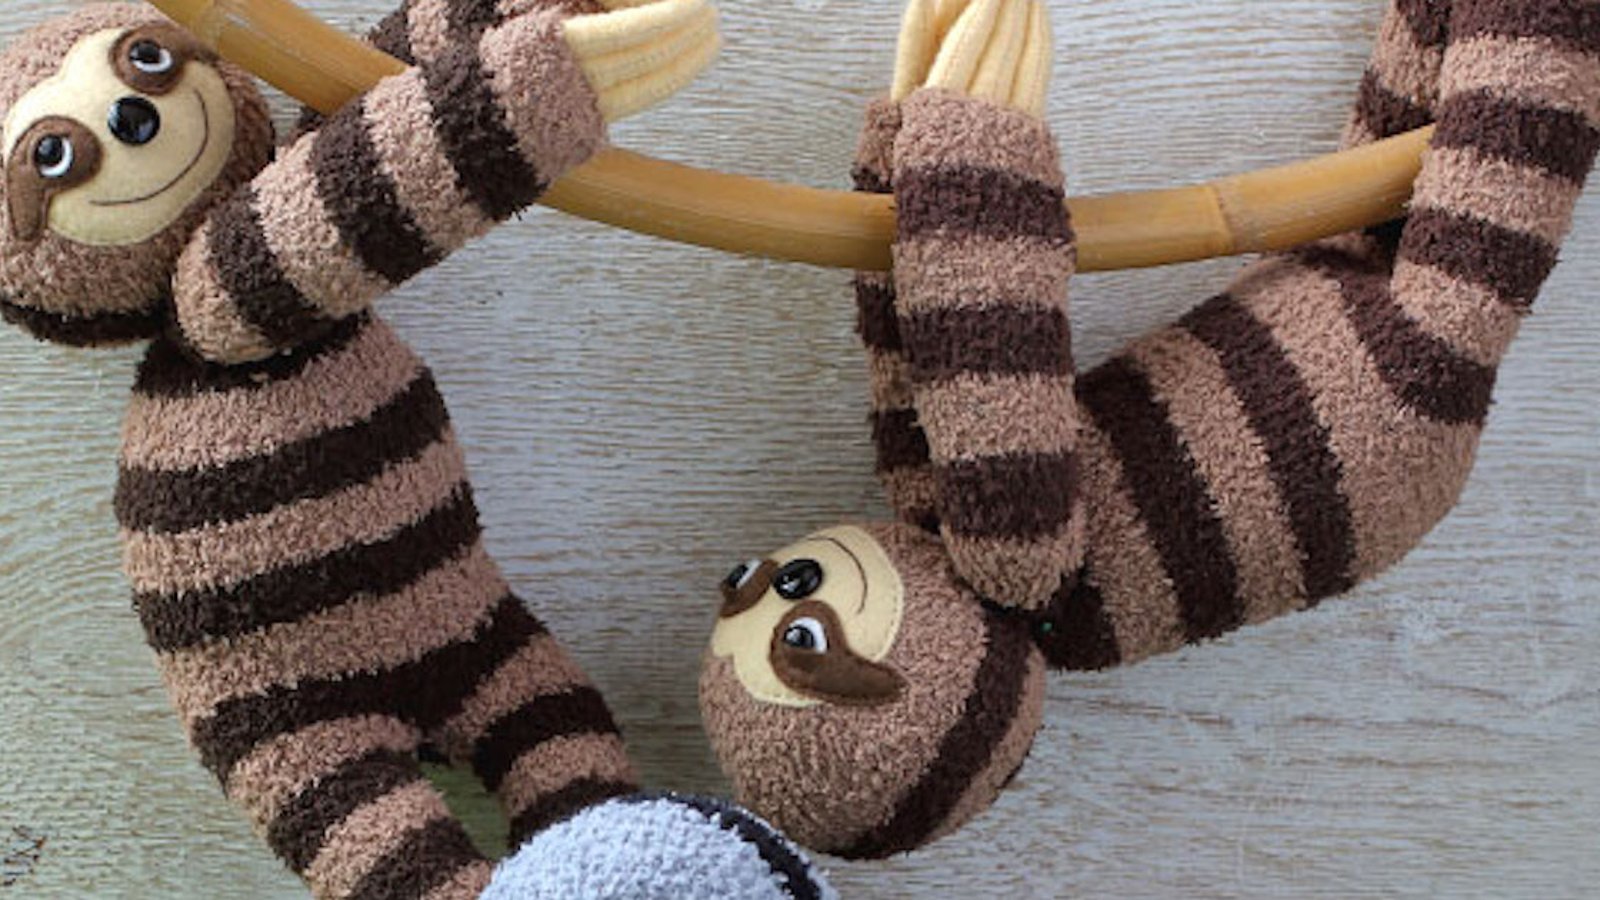 Comment faire un adorable paresseux en chaussettes